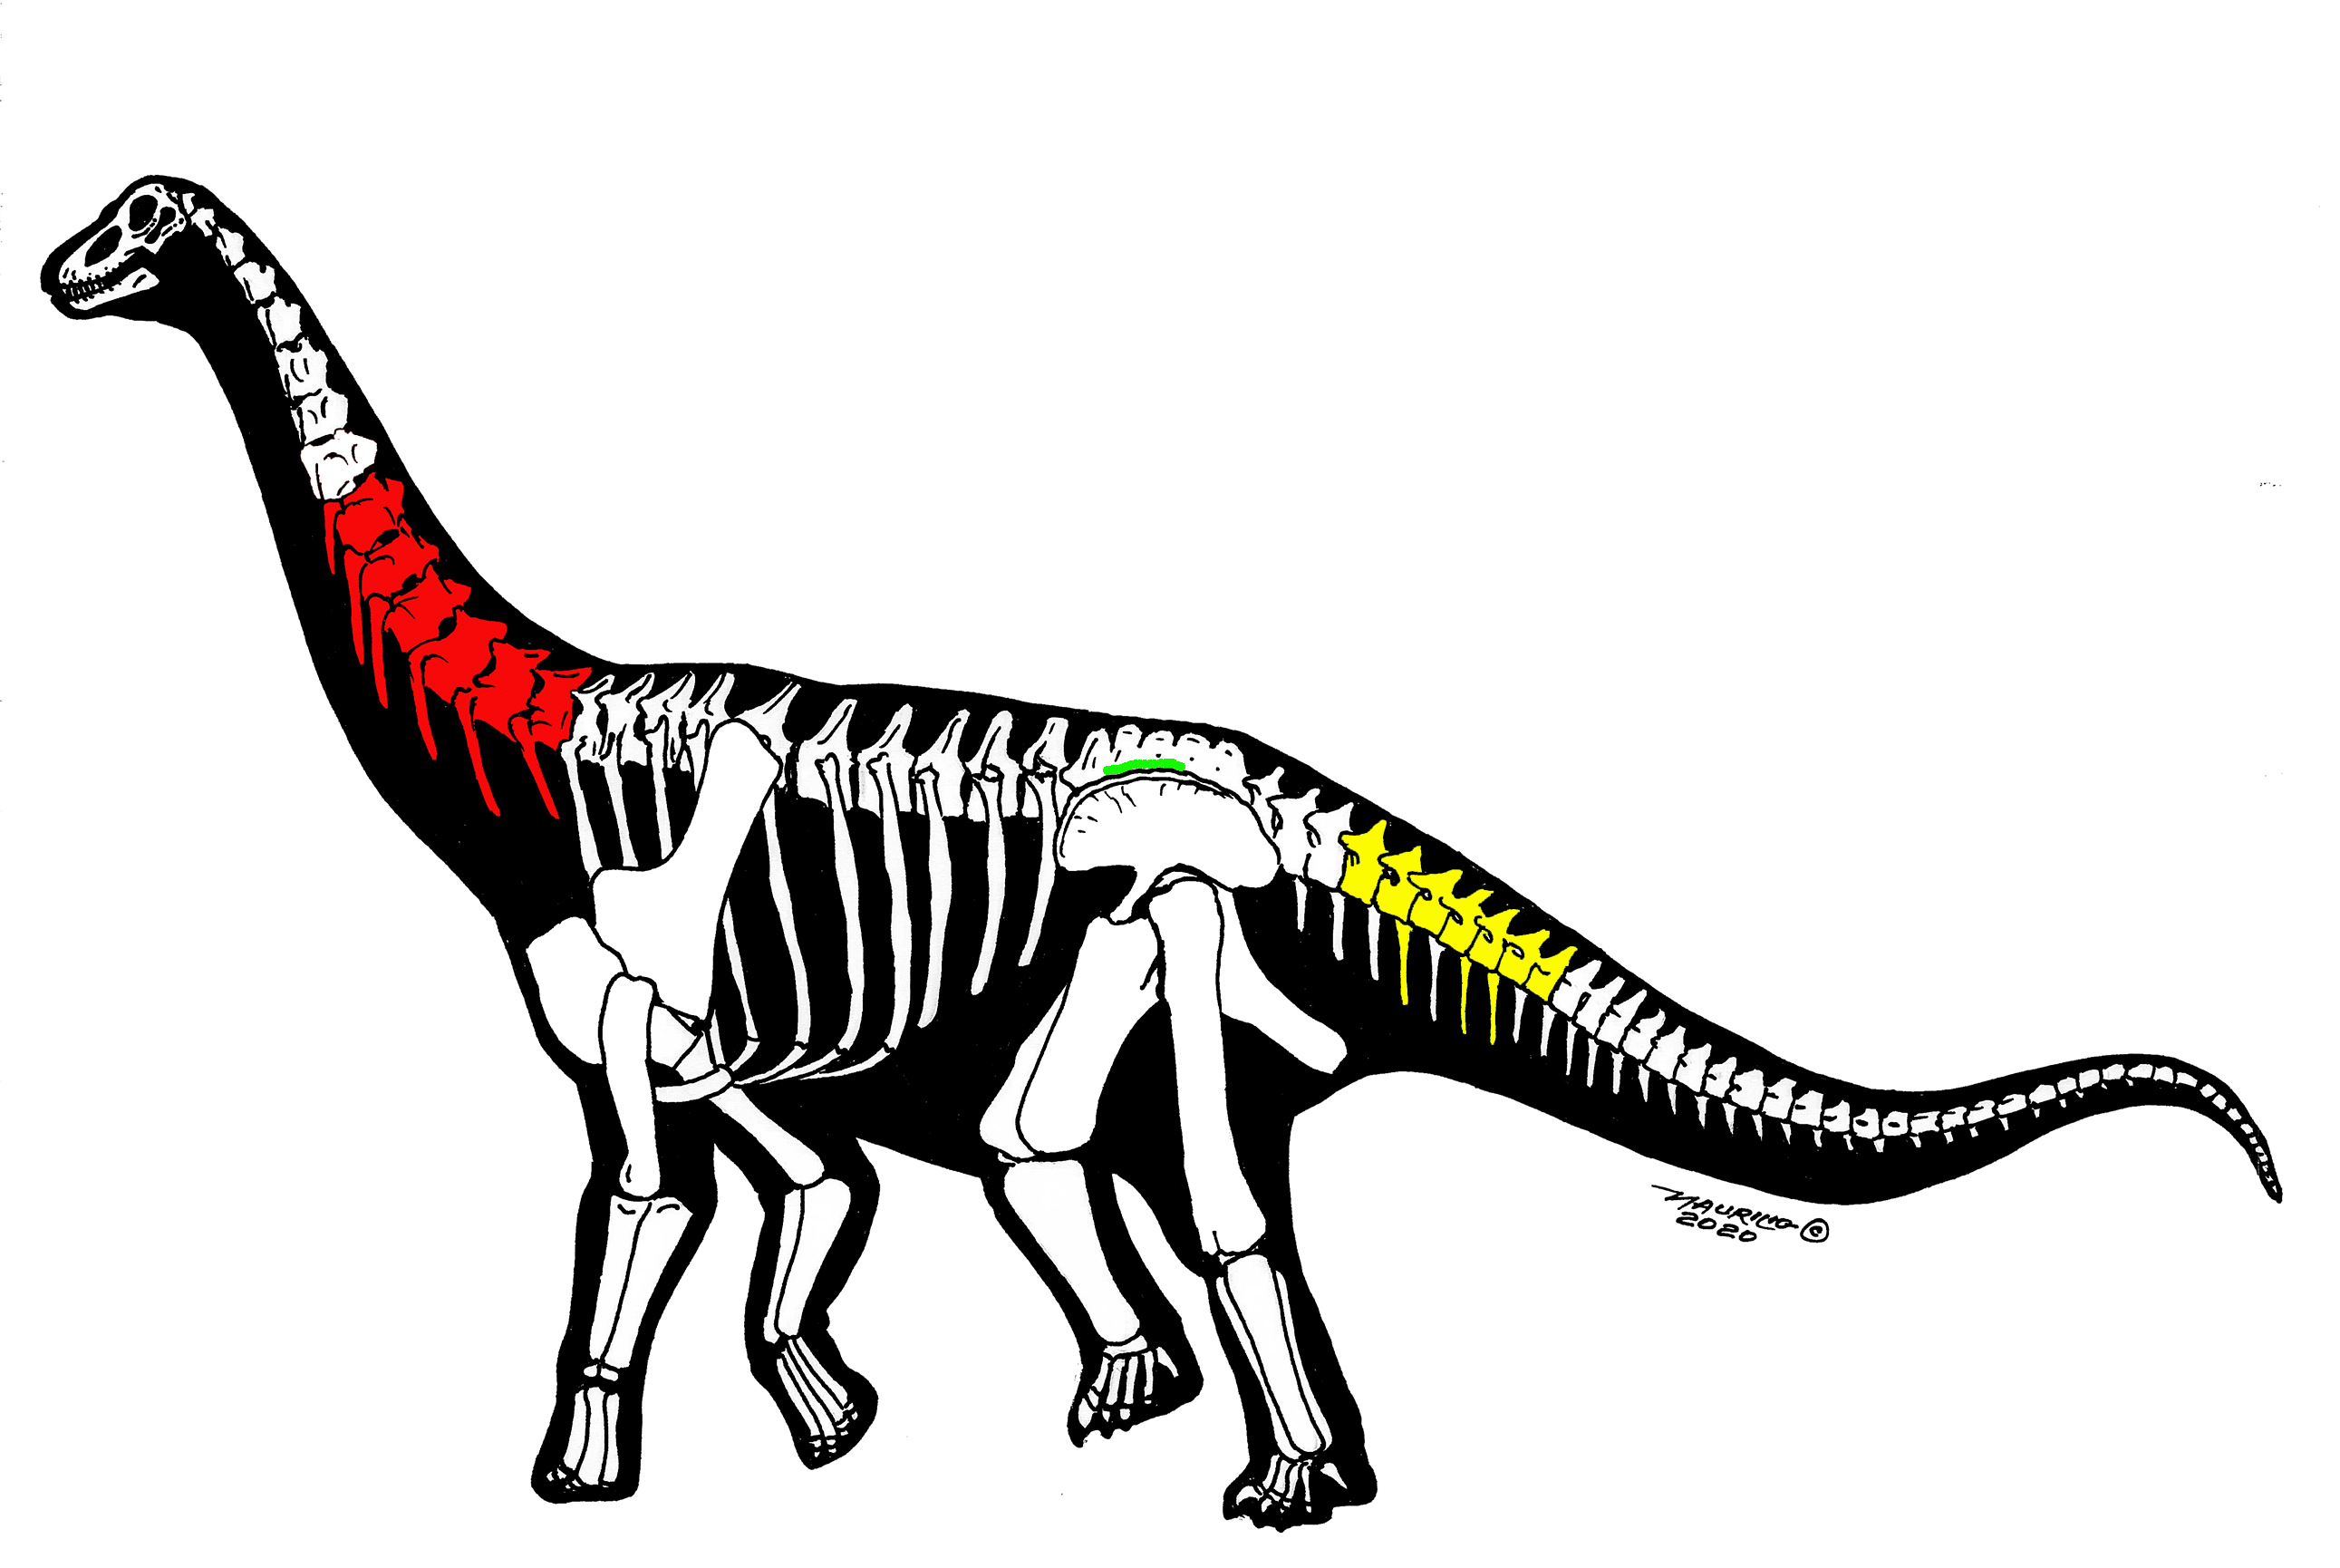 新研究的三件恐龙化石骨骼保存示意图 （Maurilio Oliveira绘）红色（颈椎）：中国丝路巨龙；黄色（尾椎）：新疆哈密巨龙；绿色（荐椎）：未命名化石